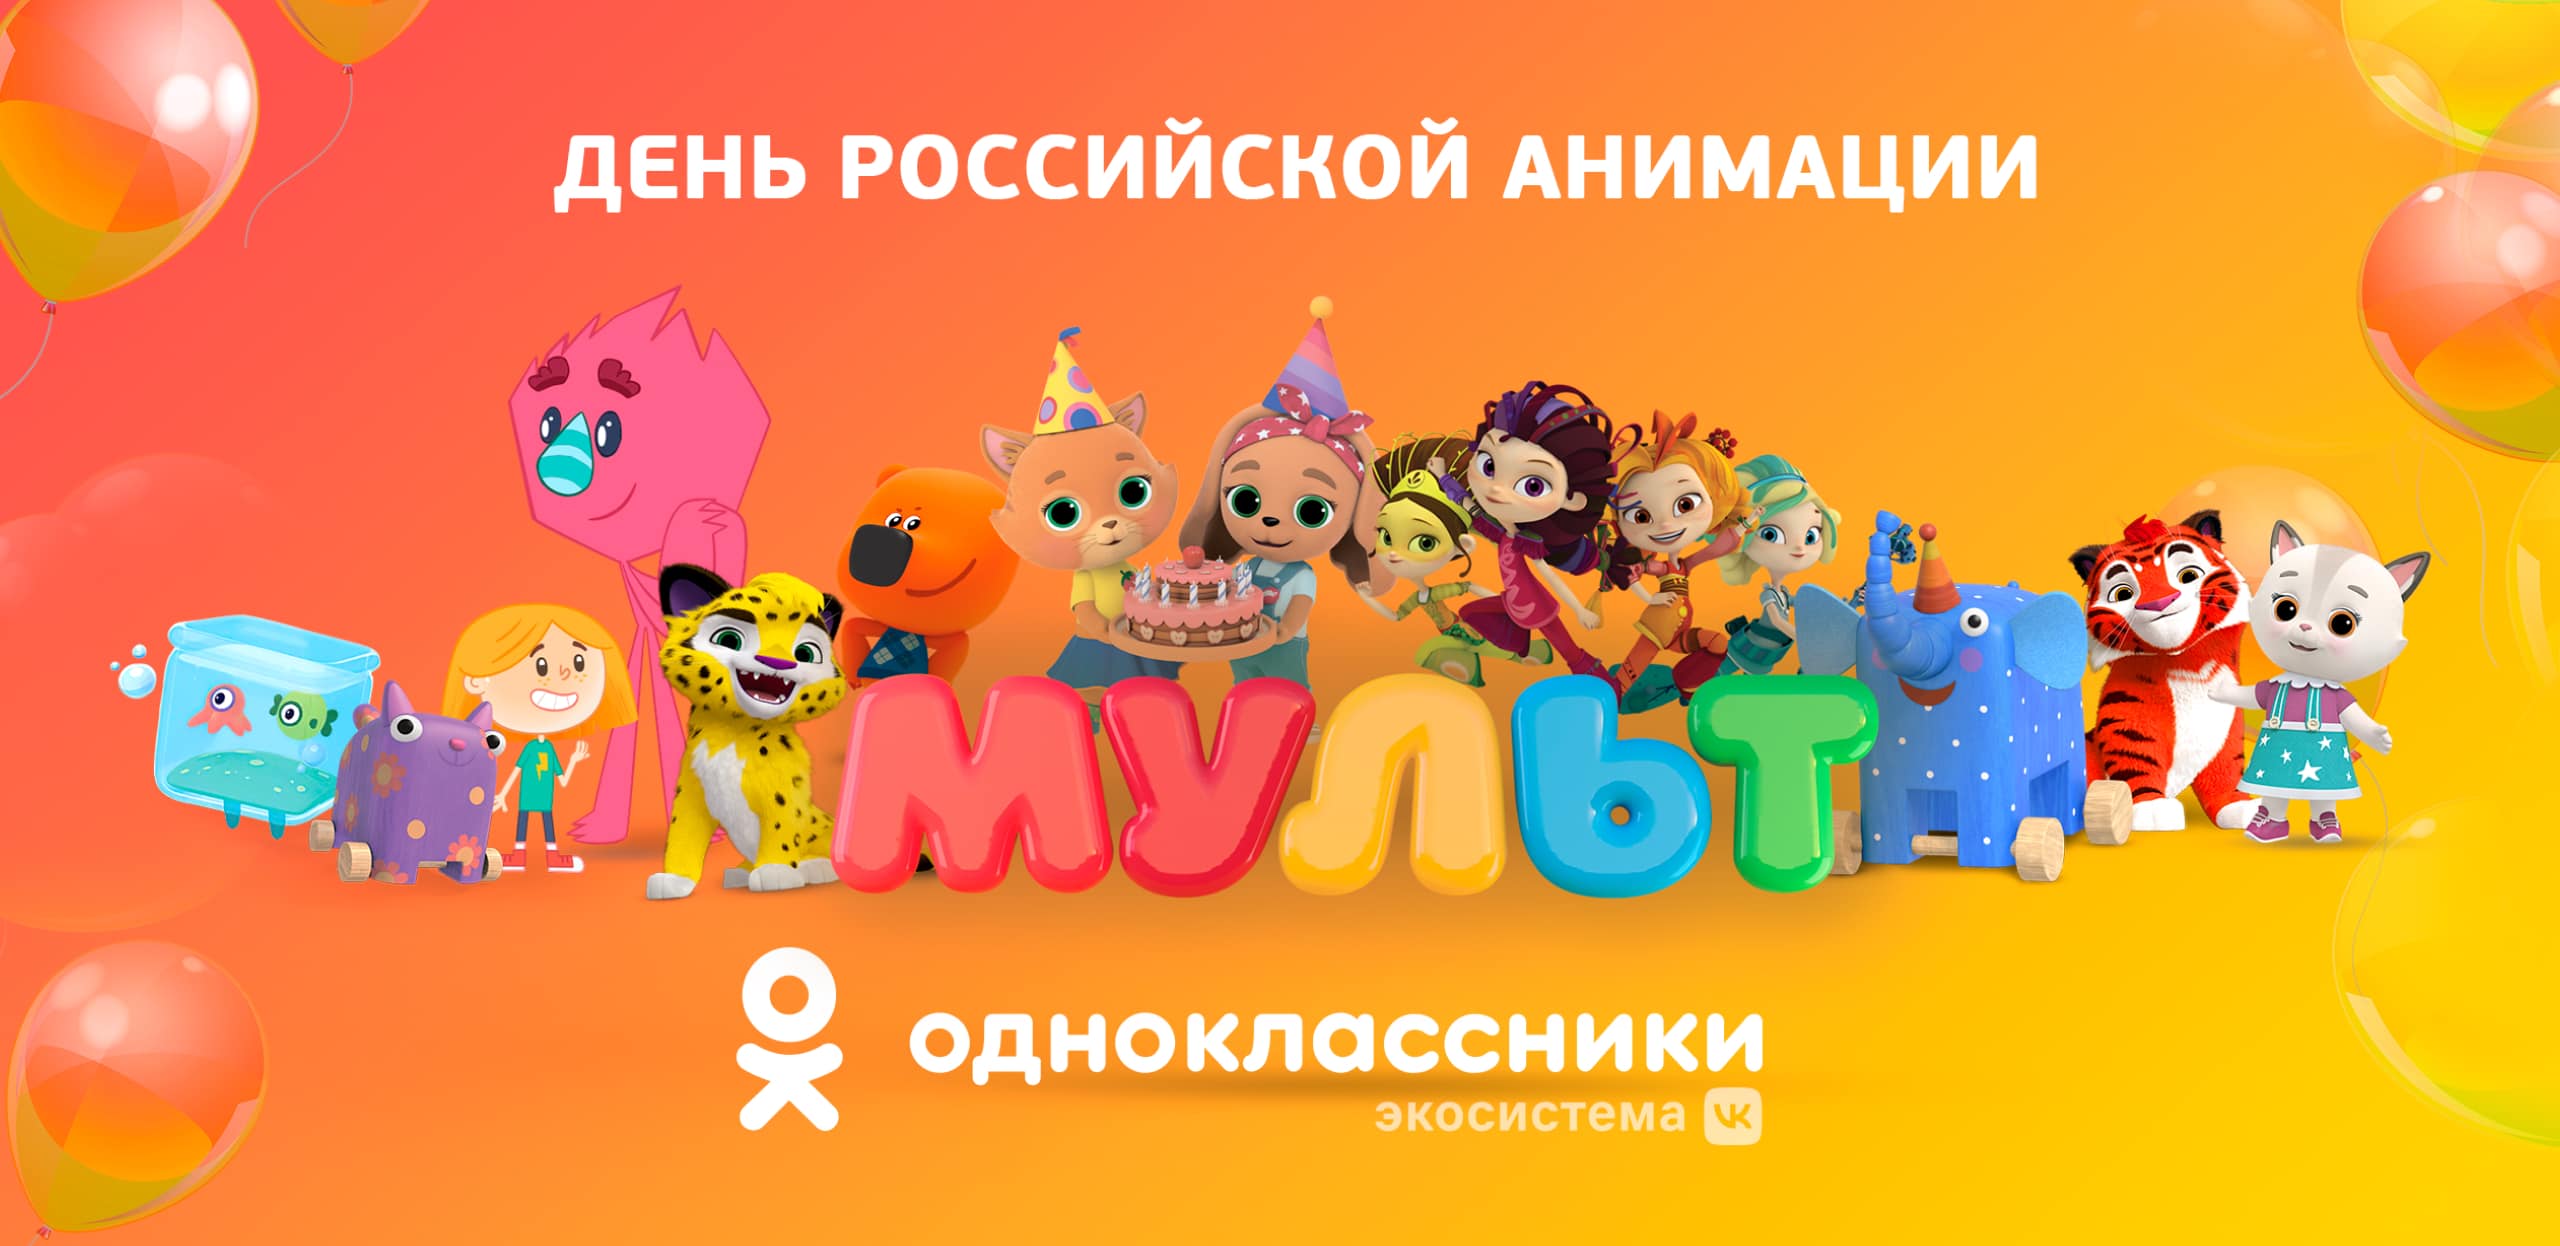 ОК и телеканал «Мульт» запустили тематические рамки и марафон детских рисунков к Дню российской анимации